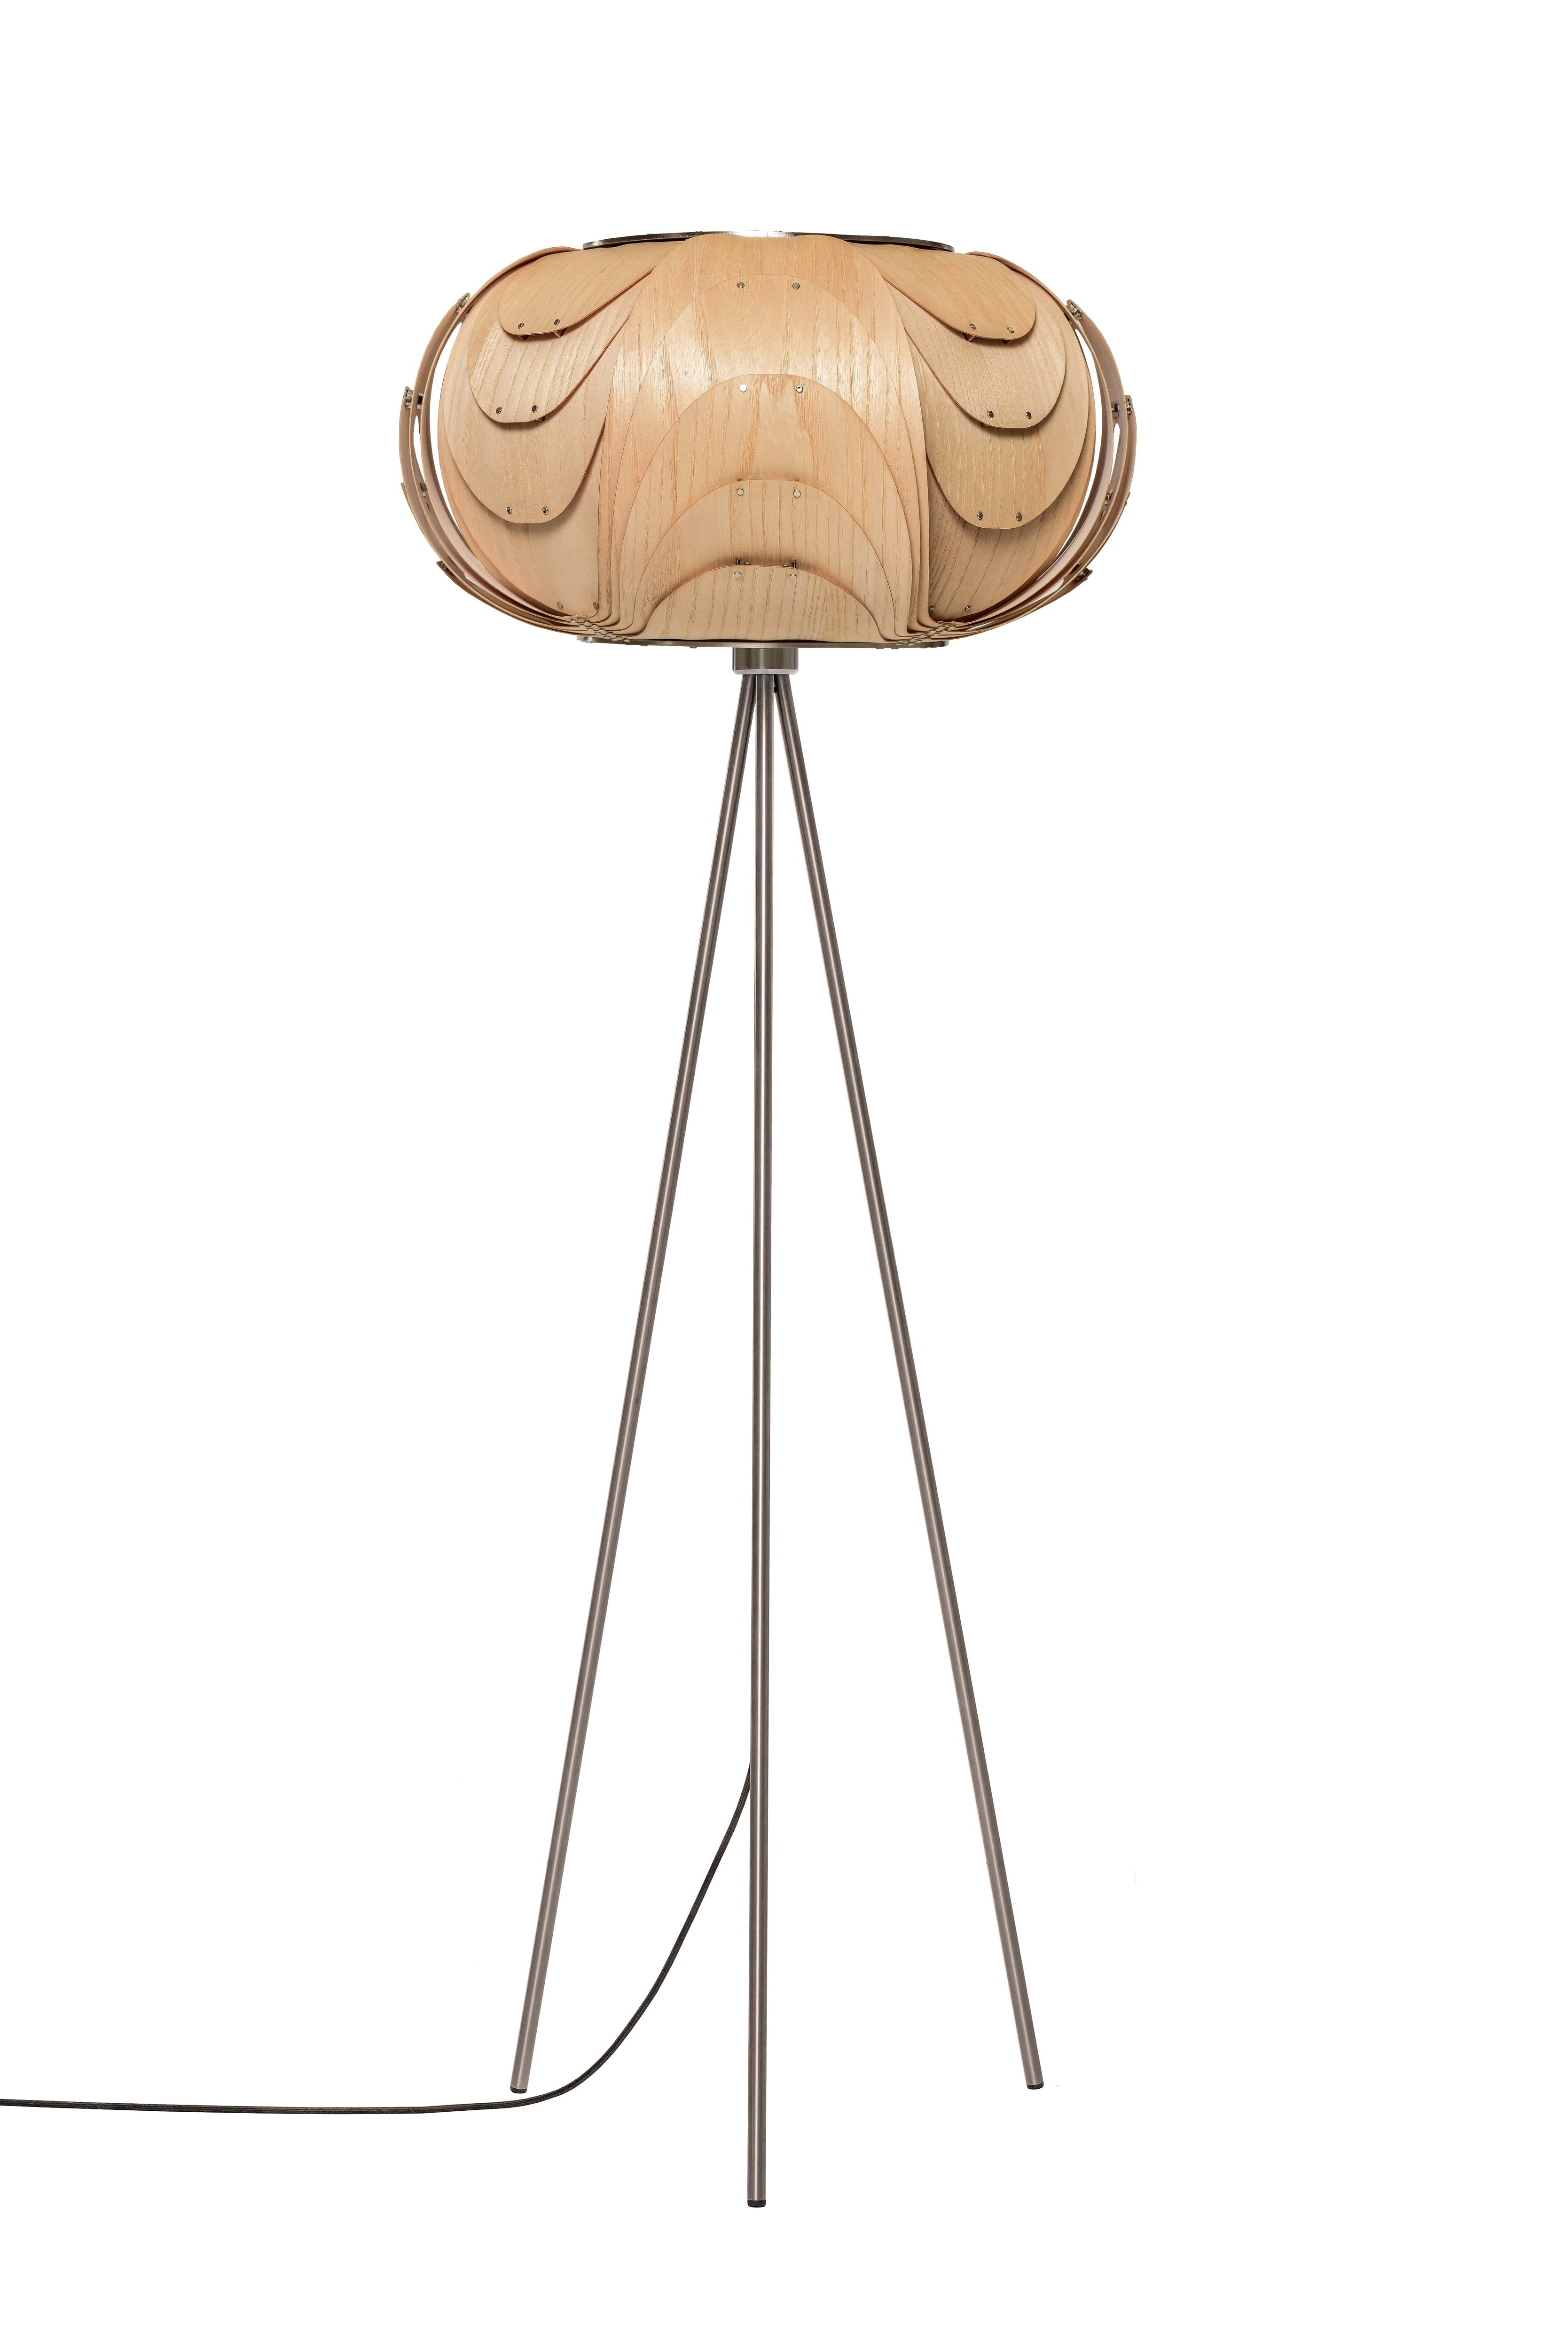 Moderne sehr elegante Holz Stehlampe in Eiche natur mit Tripod aus gebürstetem Edelstahl